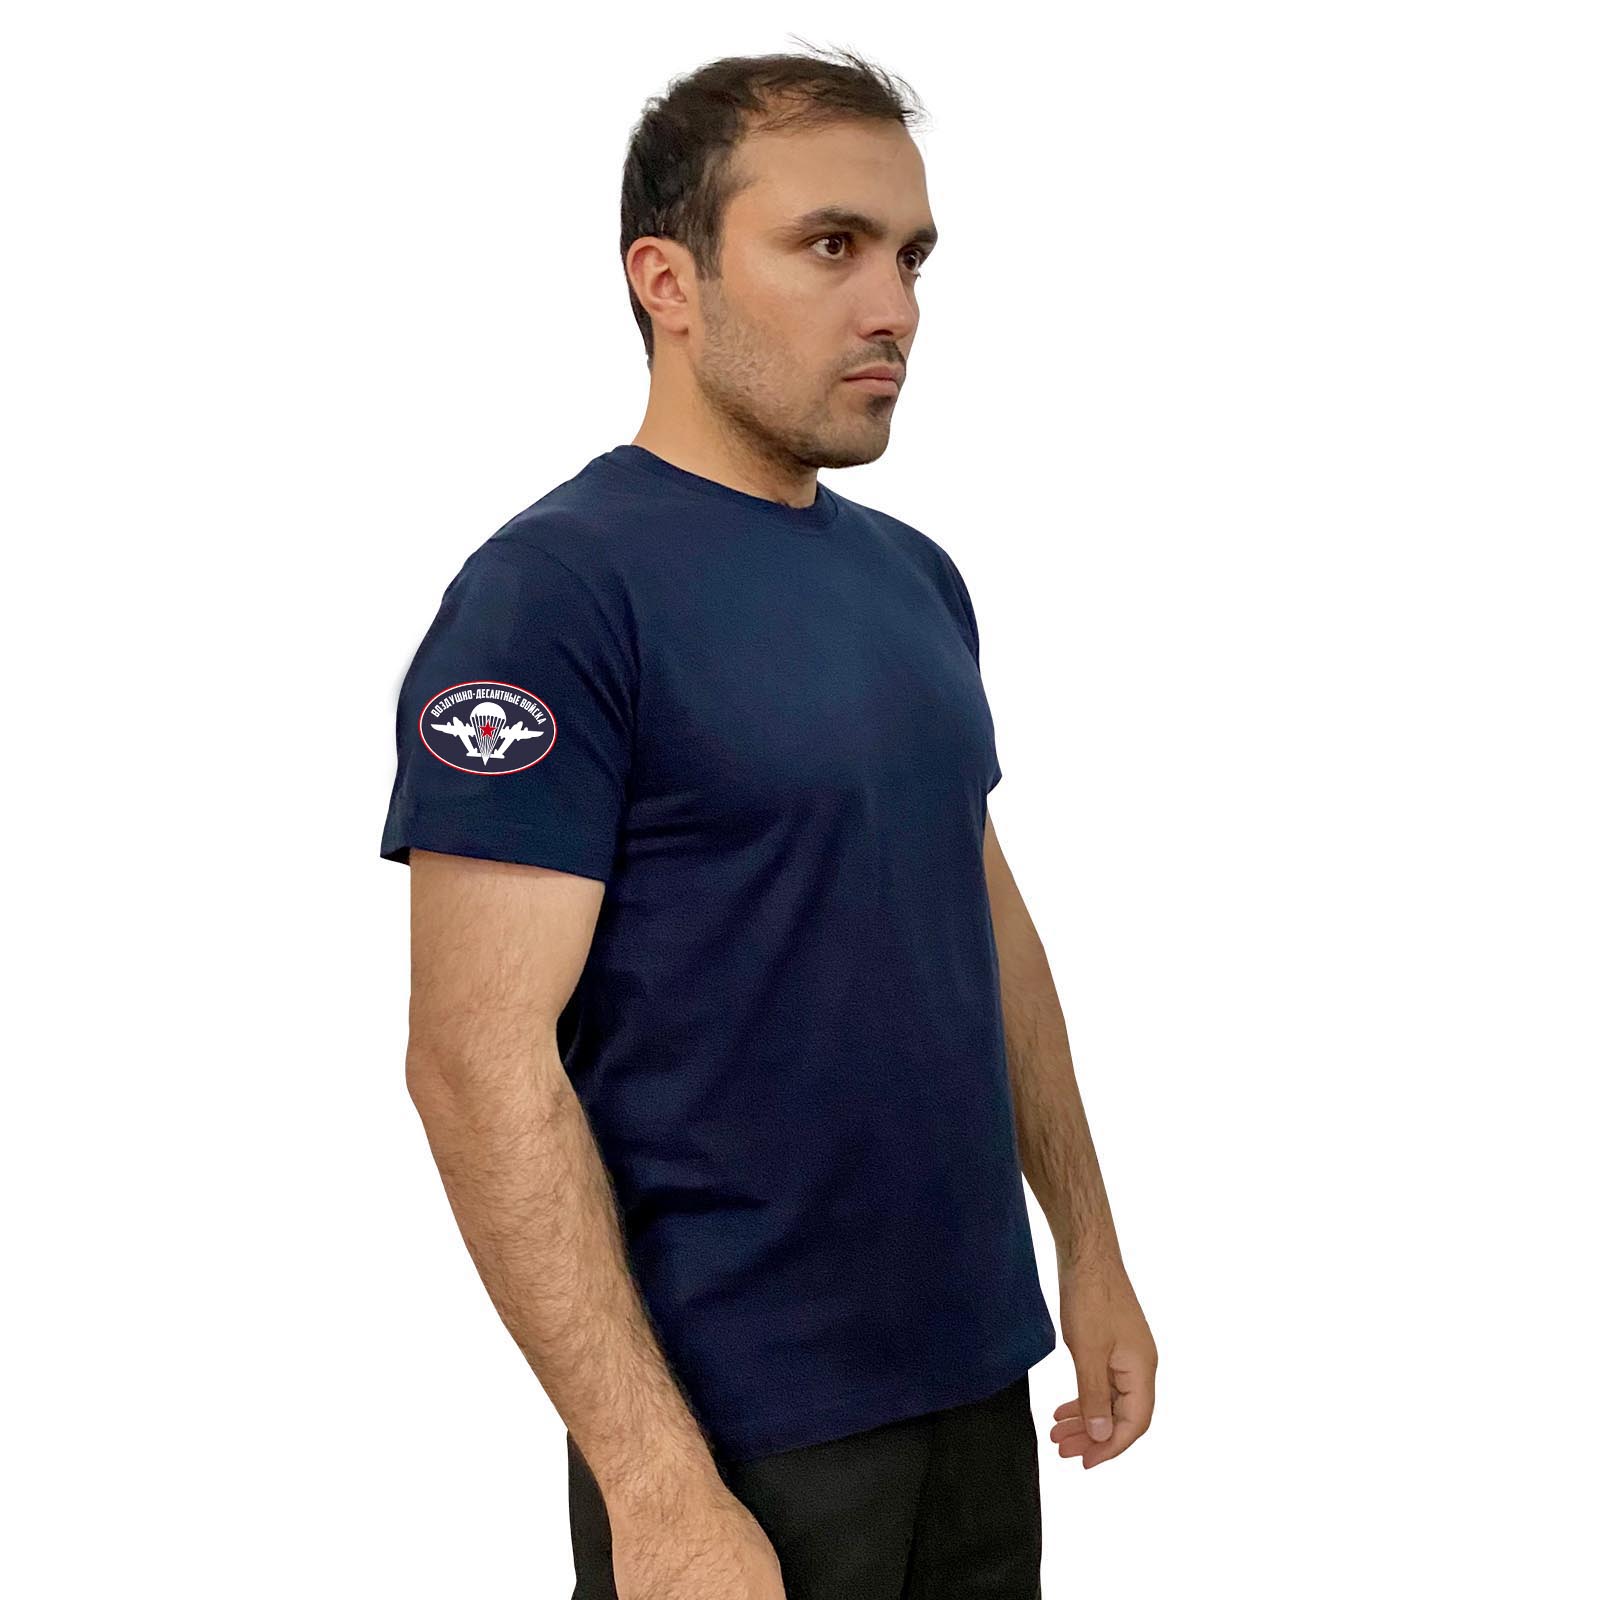 Тёмно-синяя футболка с термопереводкой ВДВ на рукаве